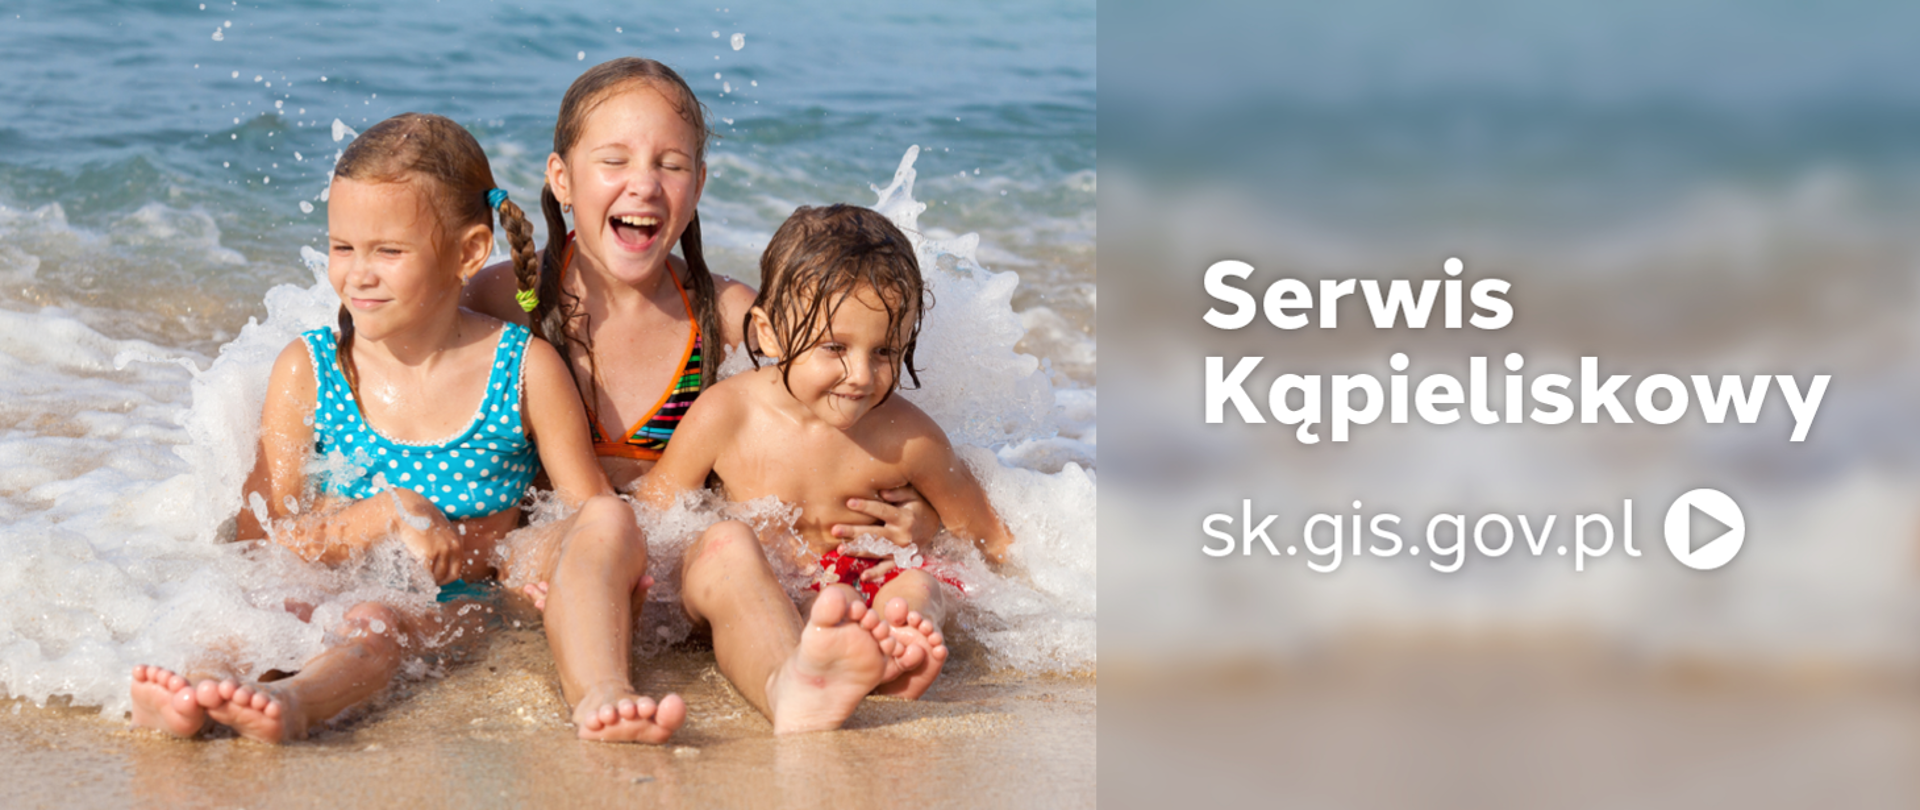 Na fotografii z lewej strony ukazano troje dzieci siedzące w wodzie na brzegu morza. Z prawej strony napis: serwis kąpieliskowy. sk.gis.gov.pl